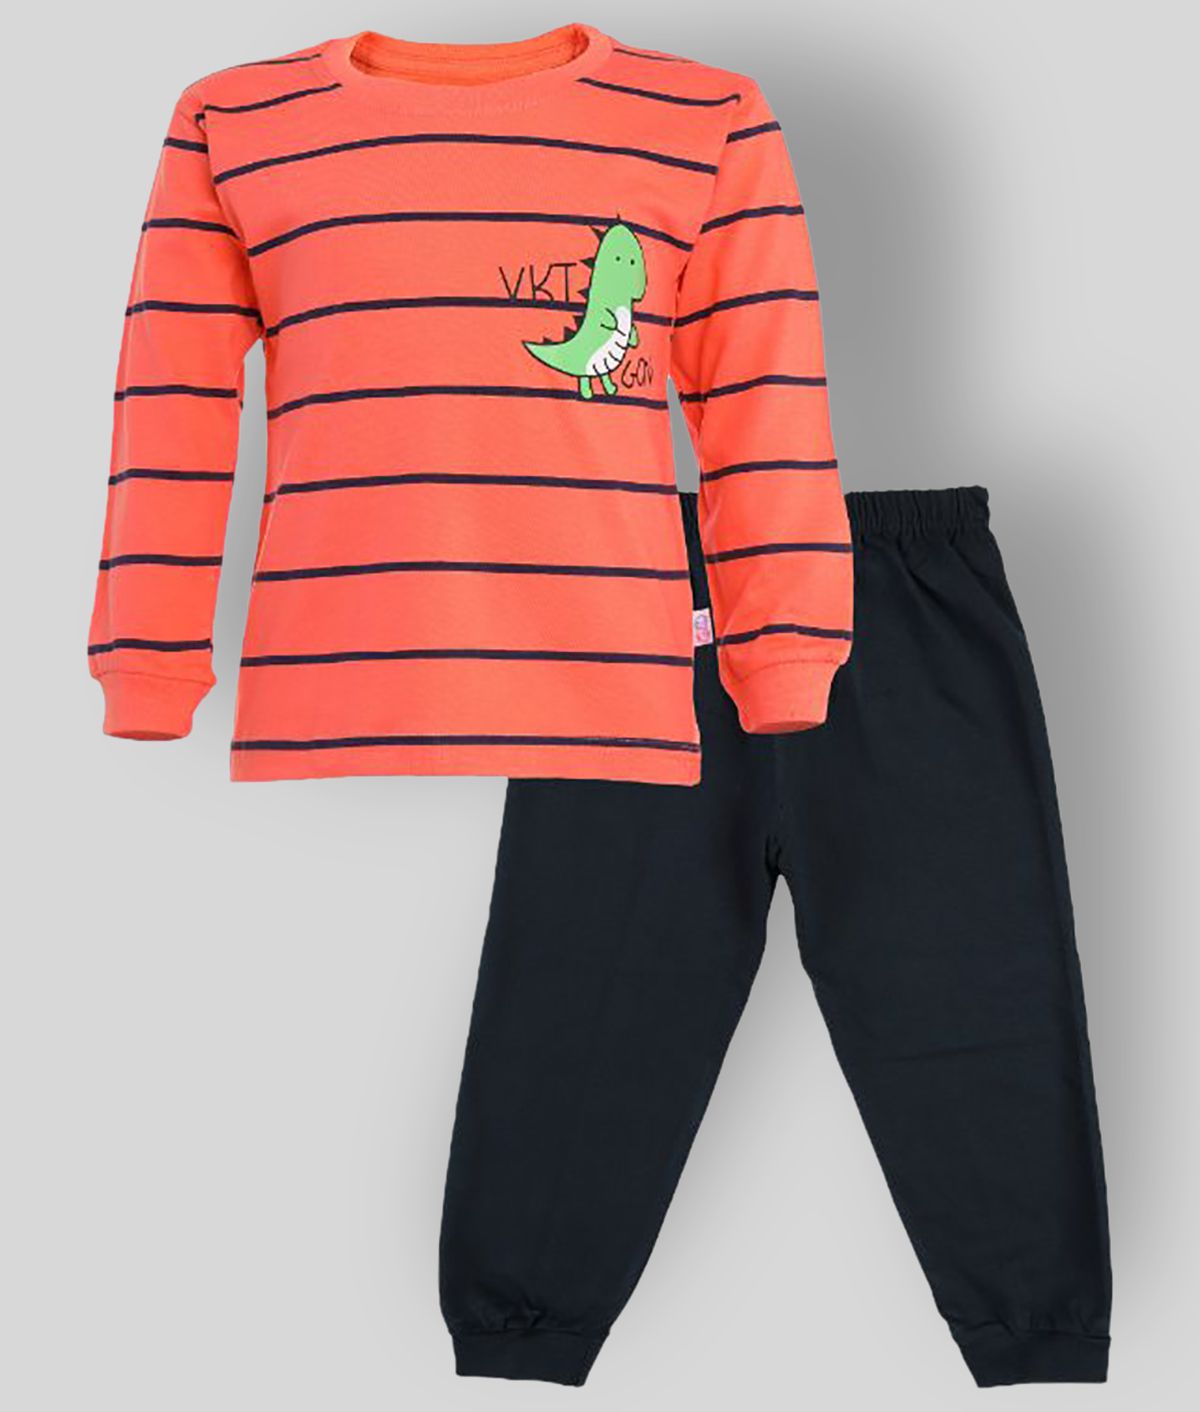     			CATCUB - Orange Cotton Boy's T-Shirt & Pants ( Pack of 1 )